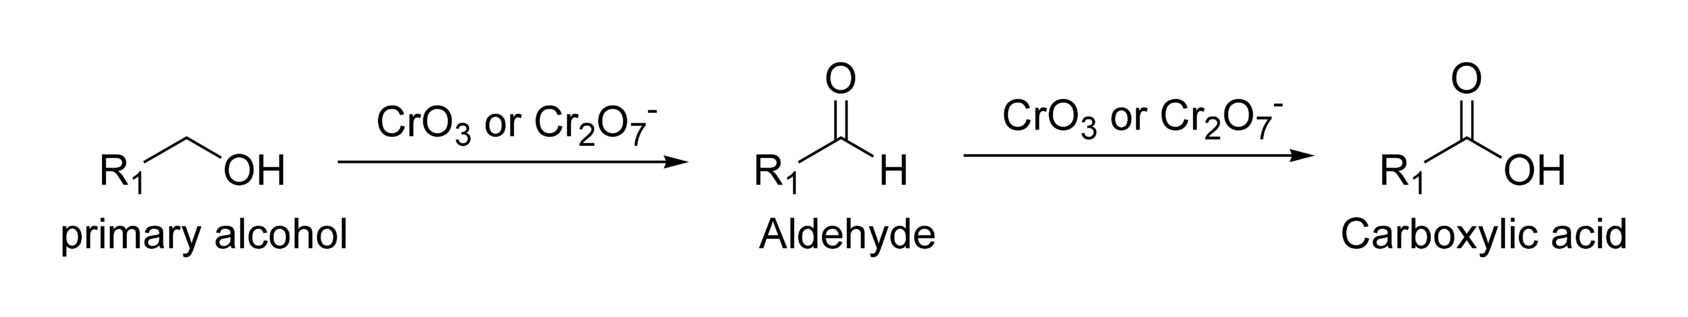 醇氧化为醛，在不受控制的氧化剂条件下继续氧化为酸